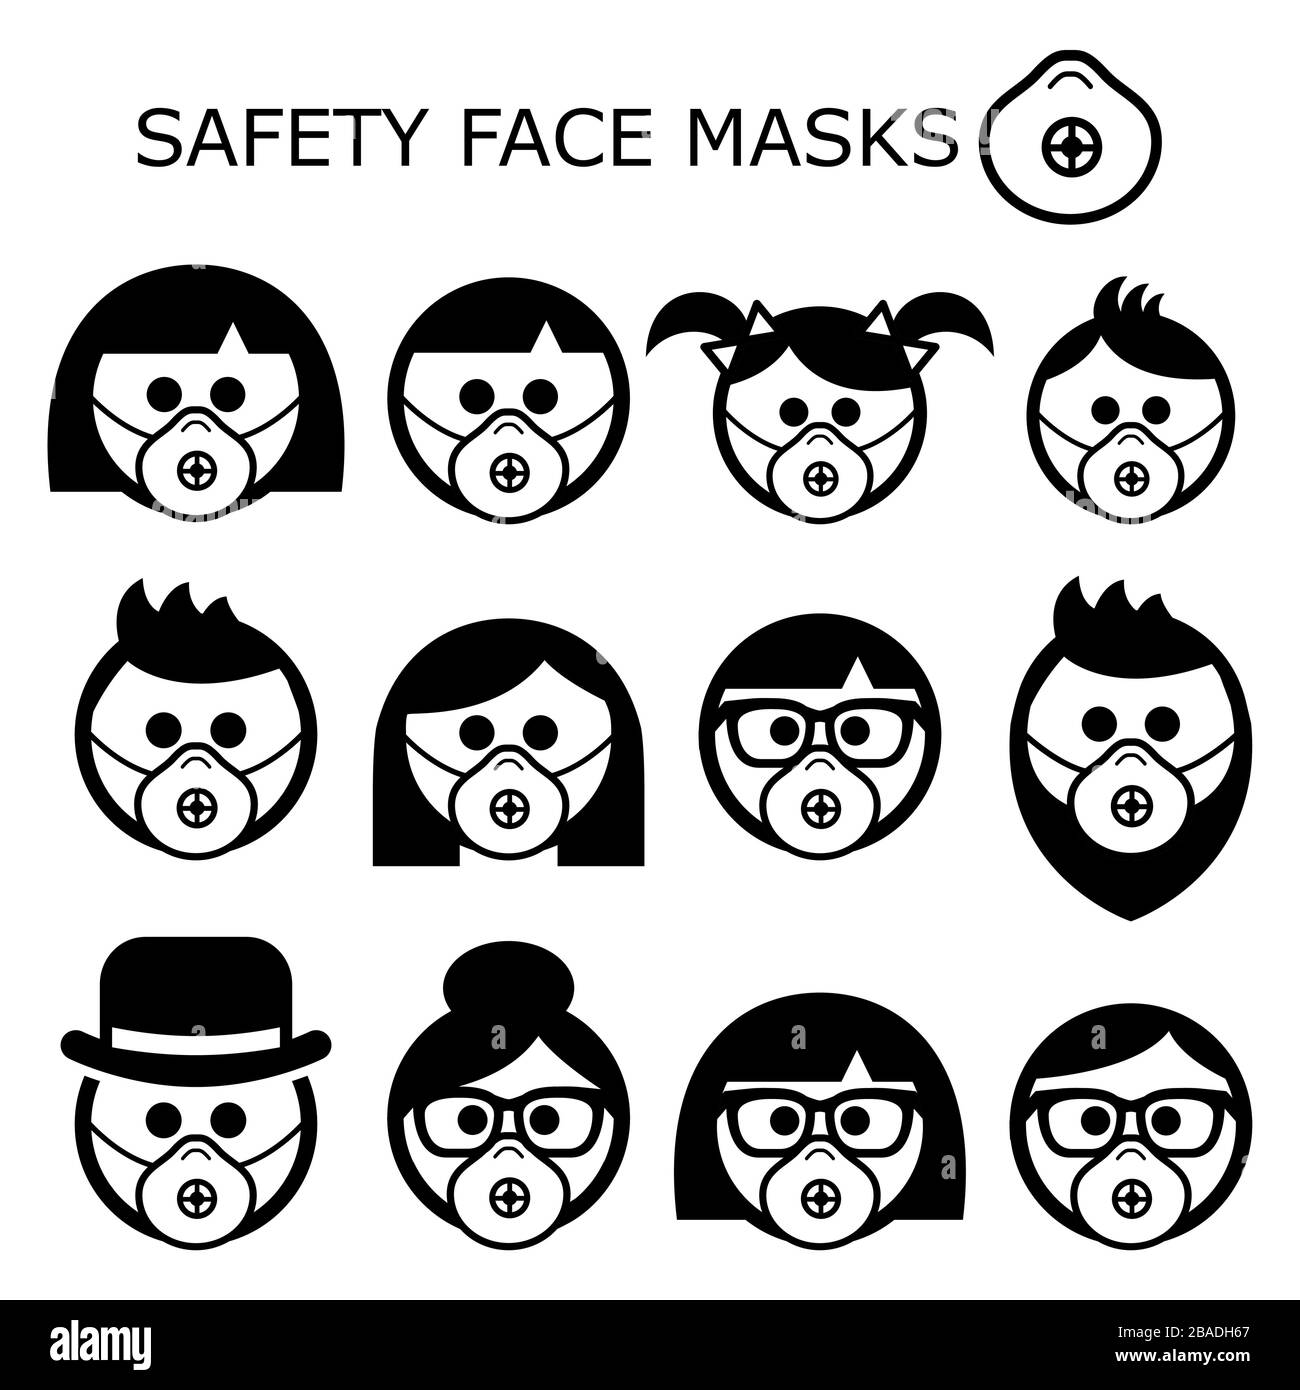 Persone che indossano maschere facciali di sicurezza icone vettoriali - adulti, bambini, anziani, maschere indossate per prevenire malattie, virus, inquinamento atmosferico, aria contaminata Illustrazione Vettoriale